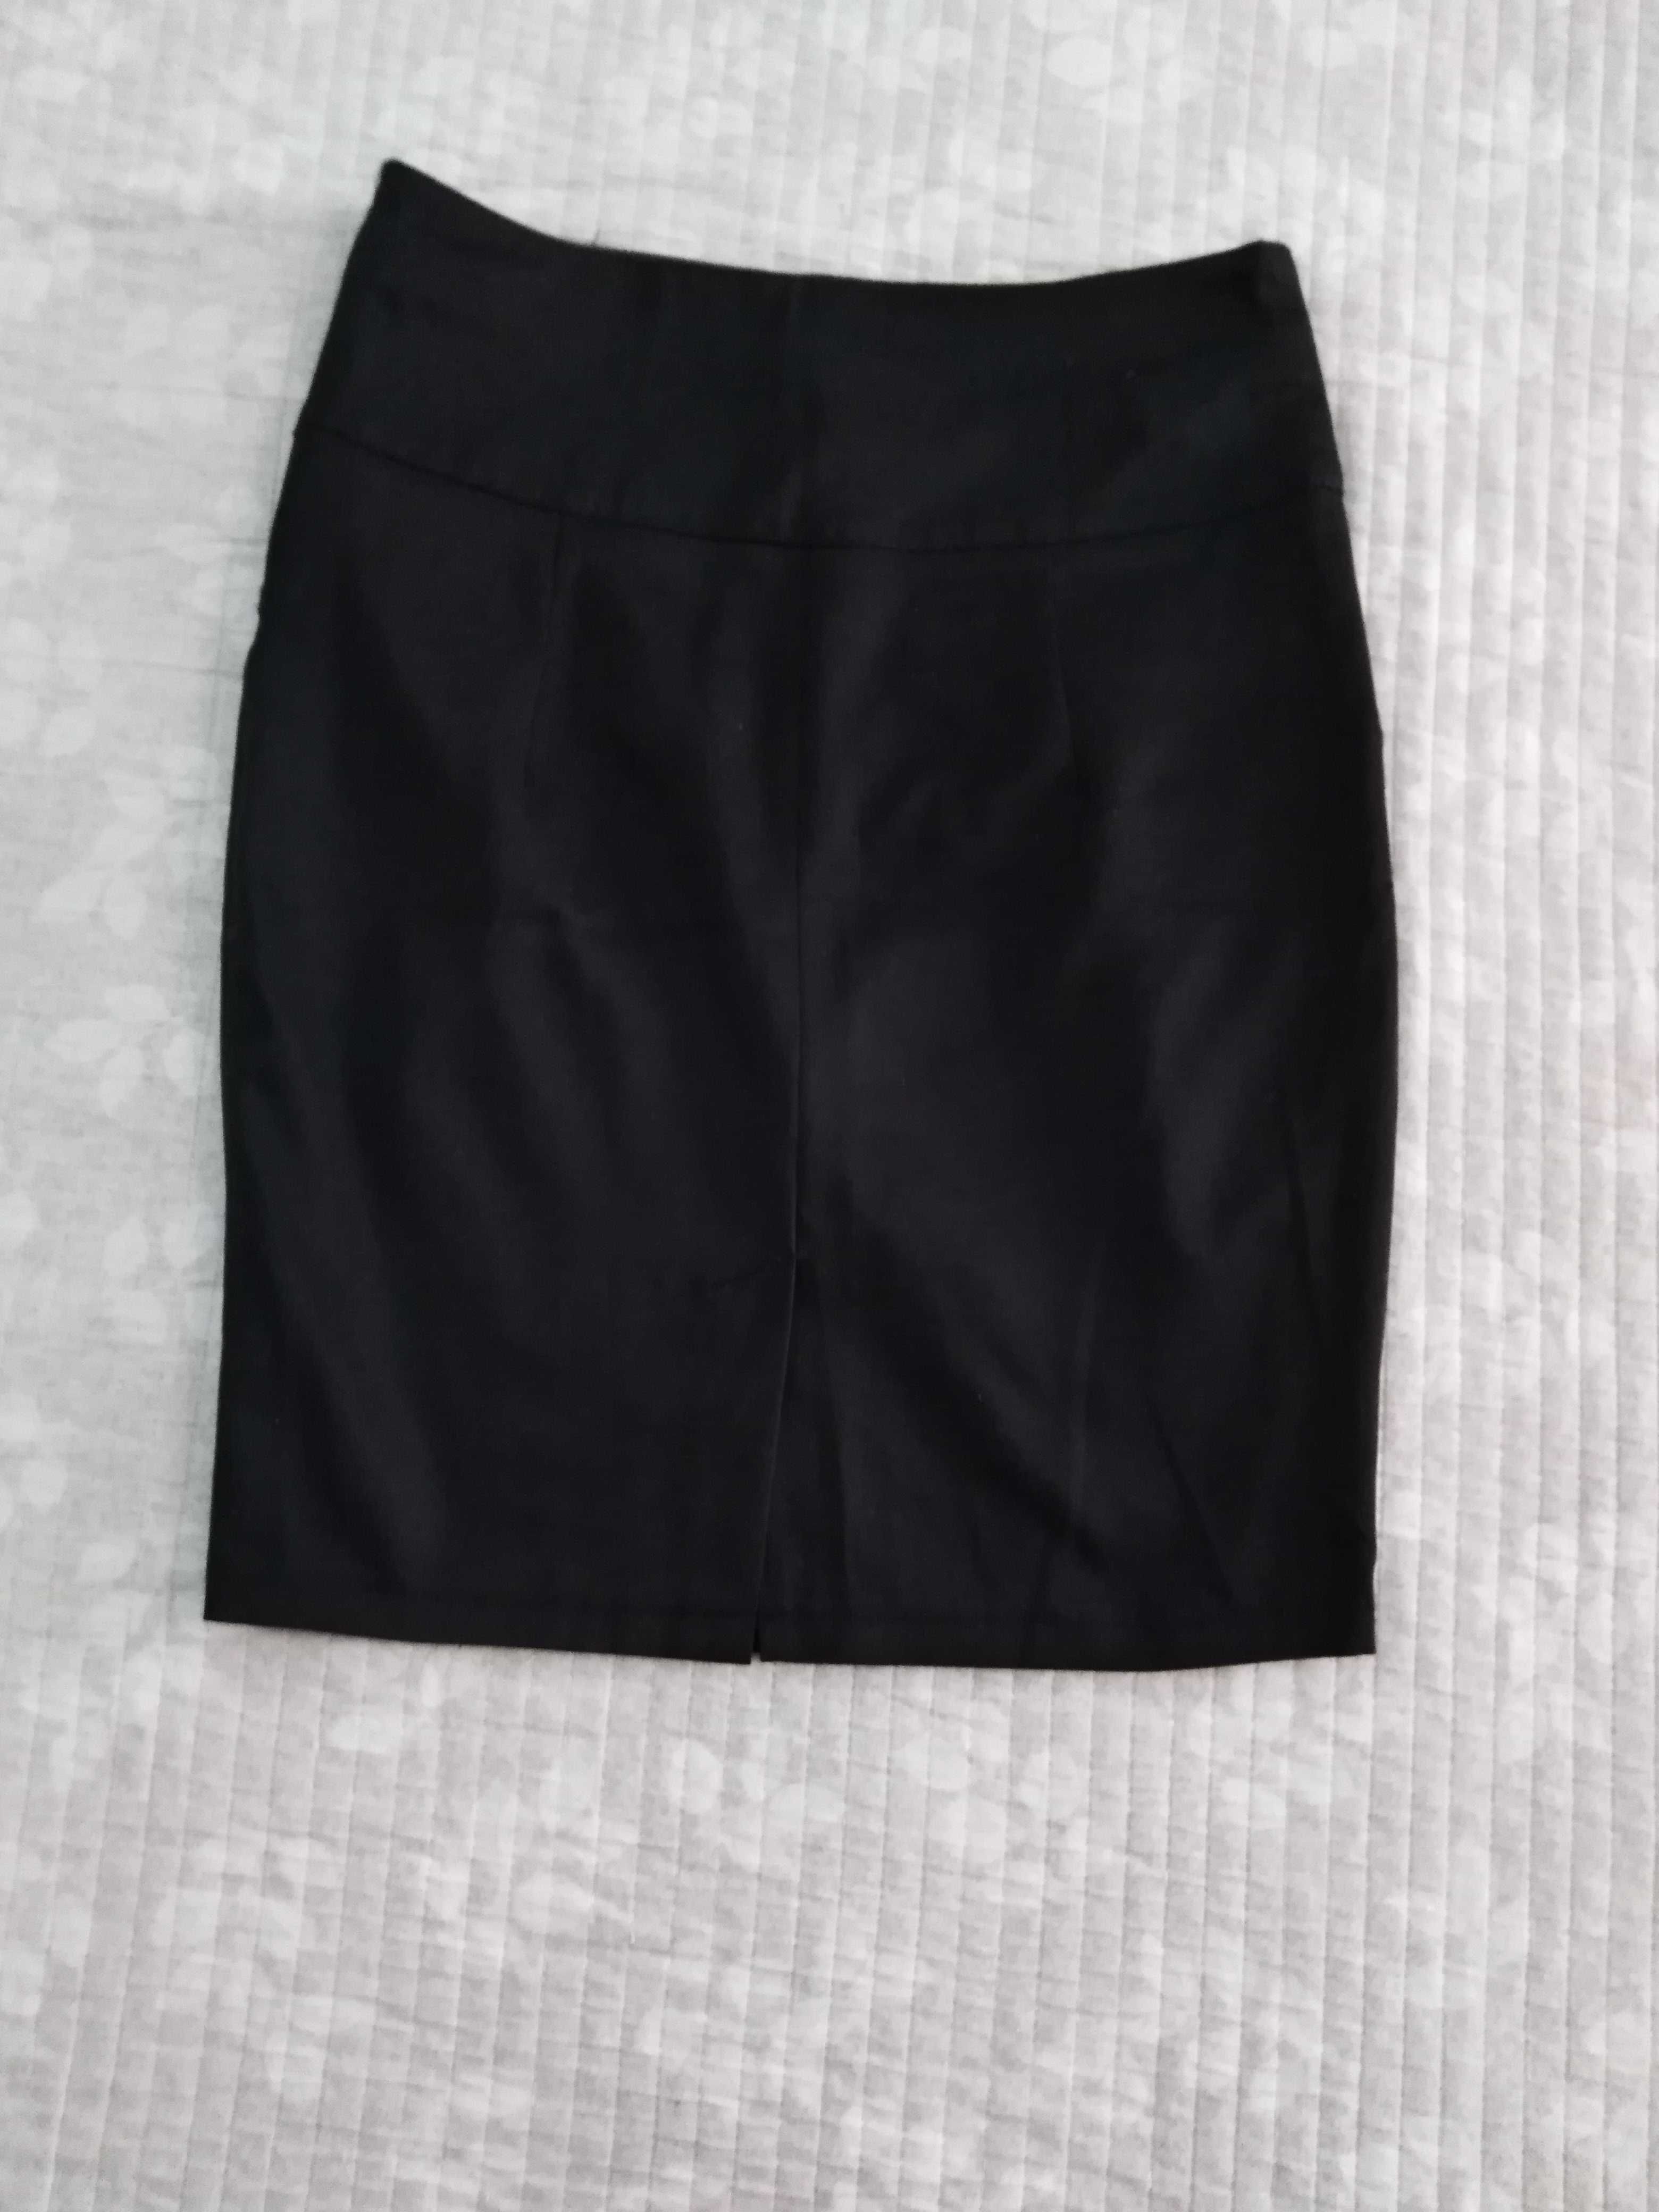 Продам школьную юбку состояние отличное, на 8-11 лет, цвет чёрный